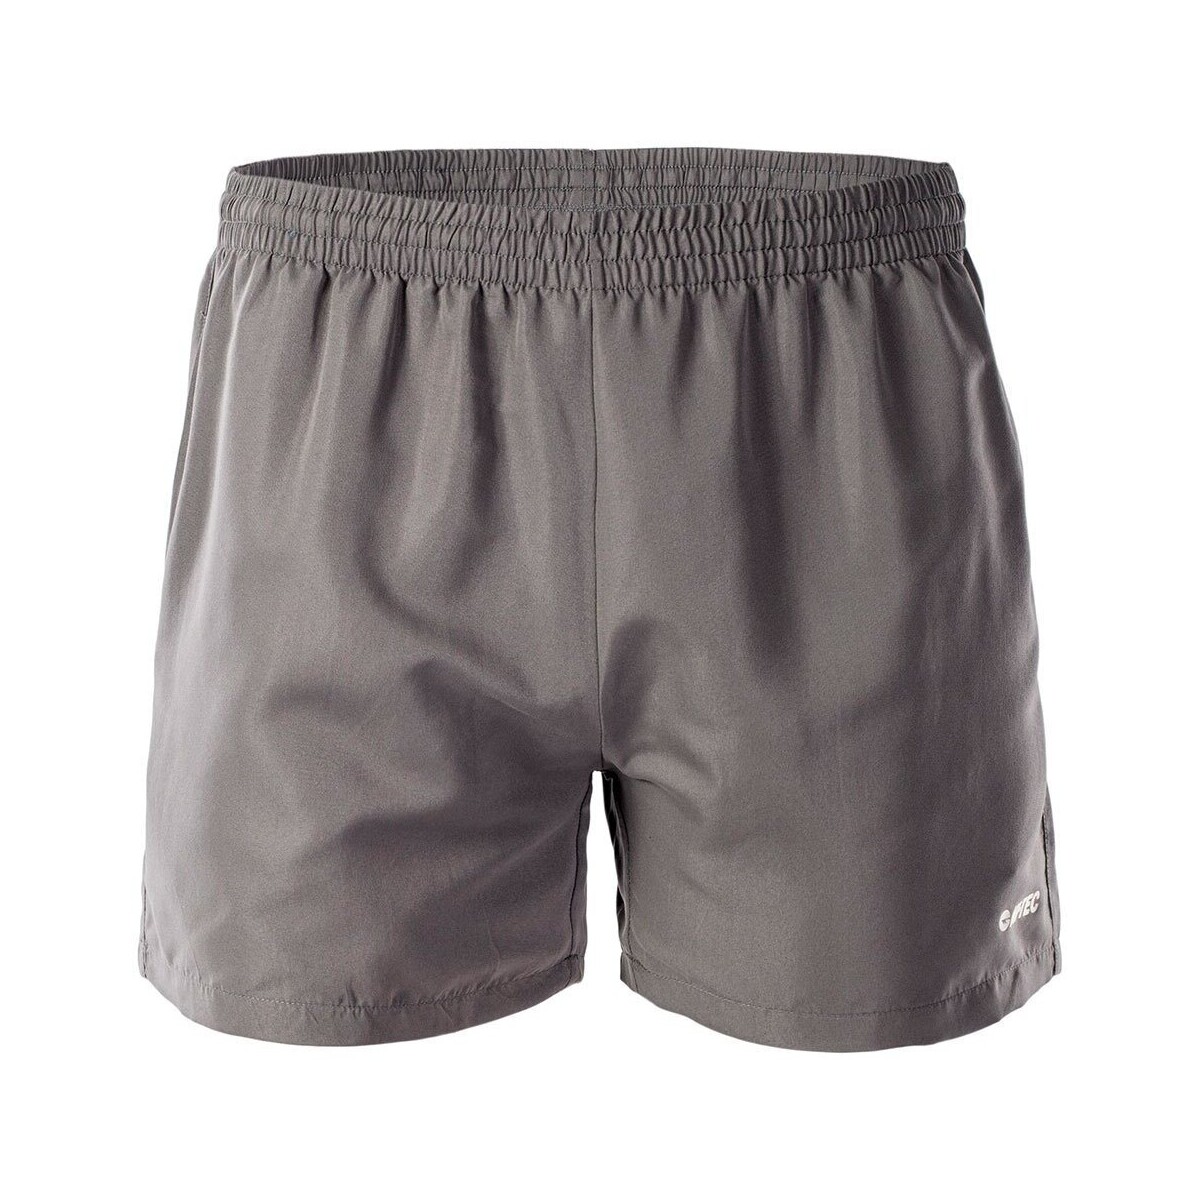 Vêtements Homme Shorts / Bermudas Hi-Tec Matt Gris